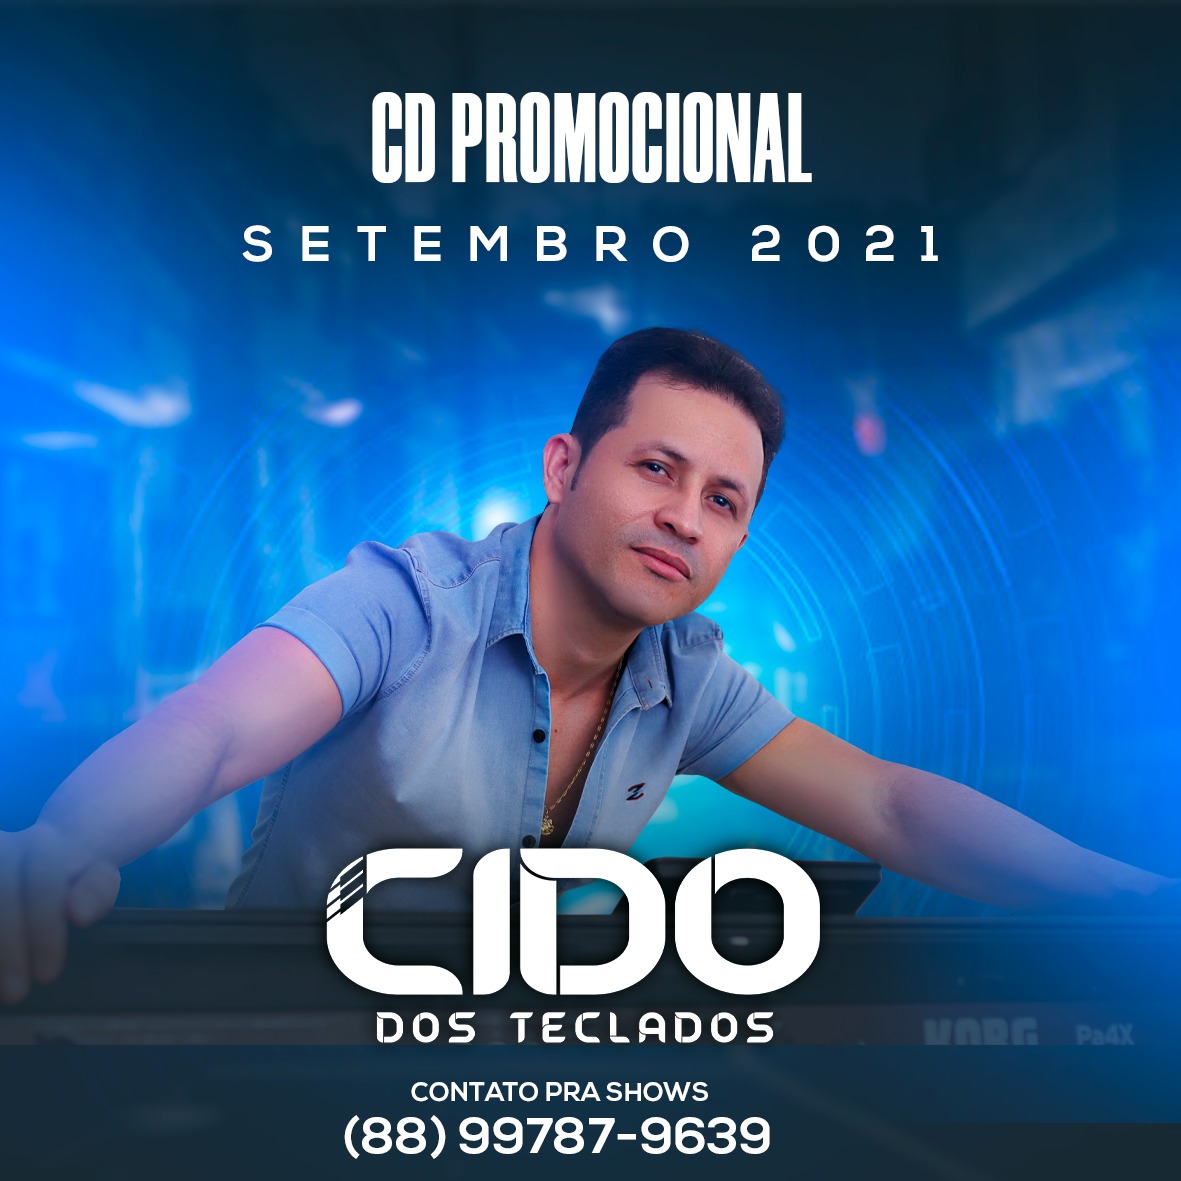 Cido Dos Teclados - Cleyton Maia CDs 2021